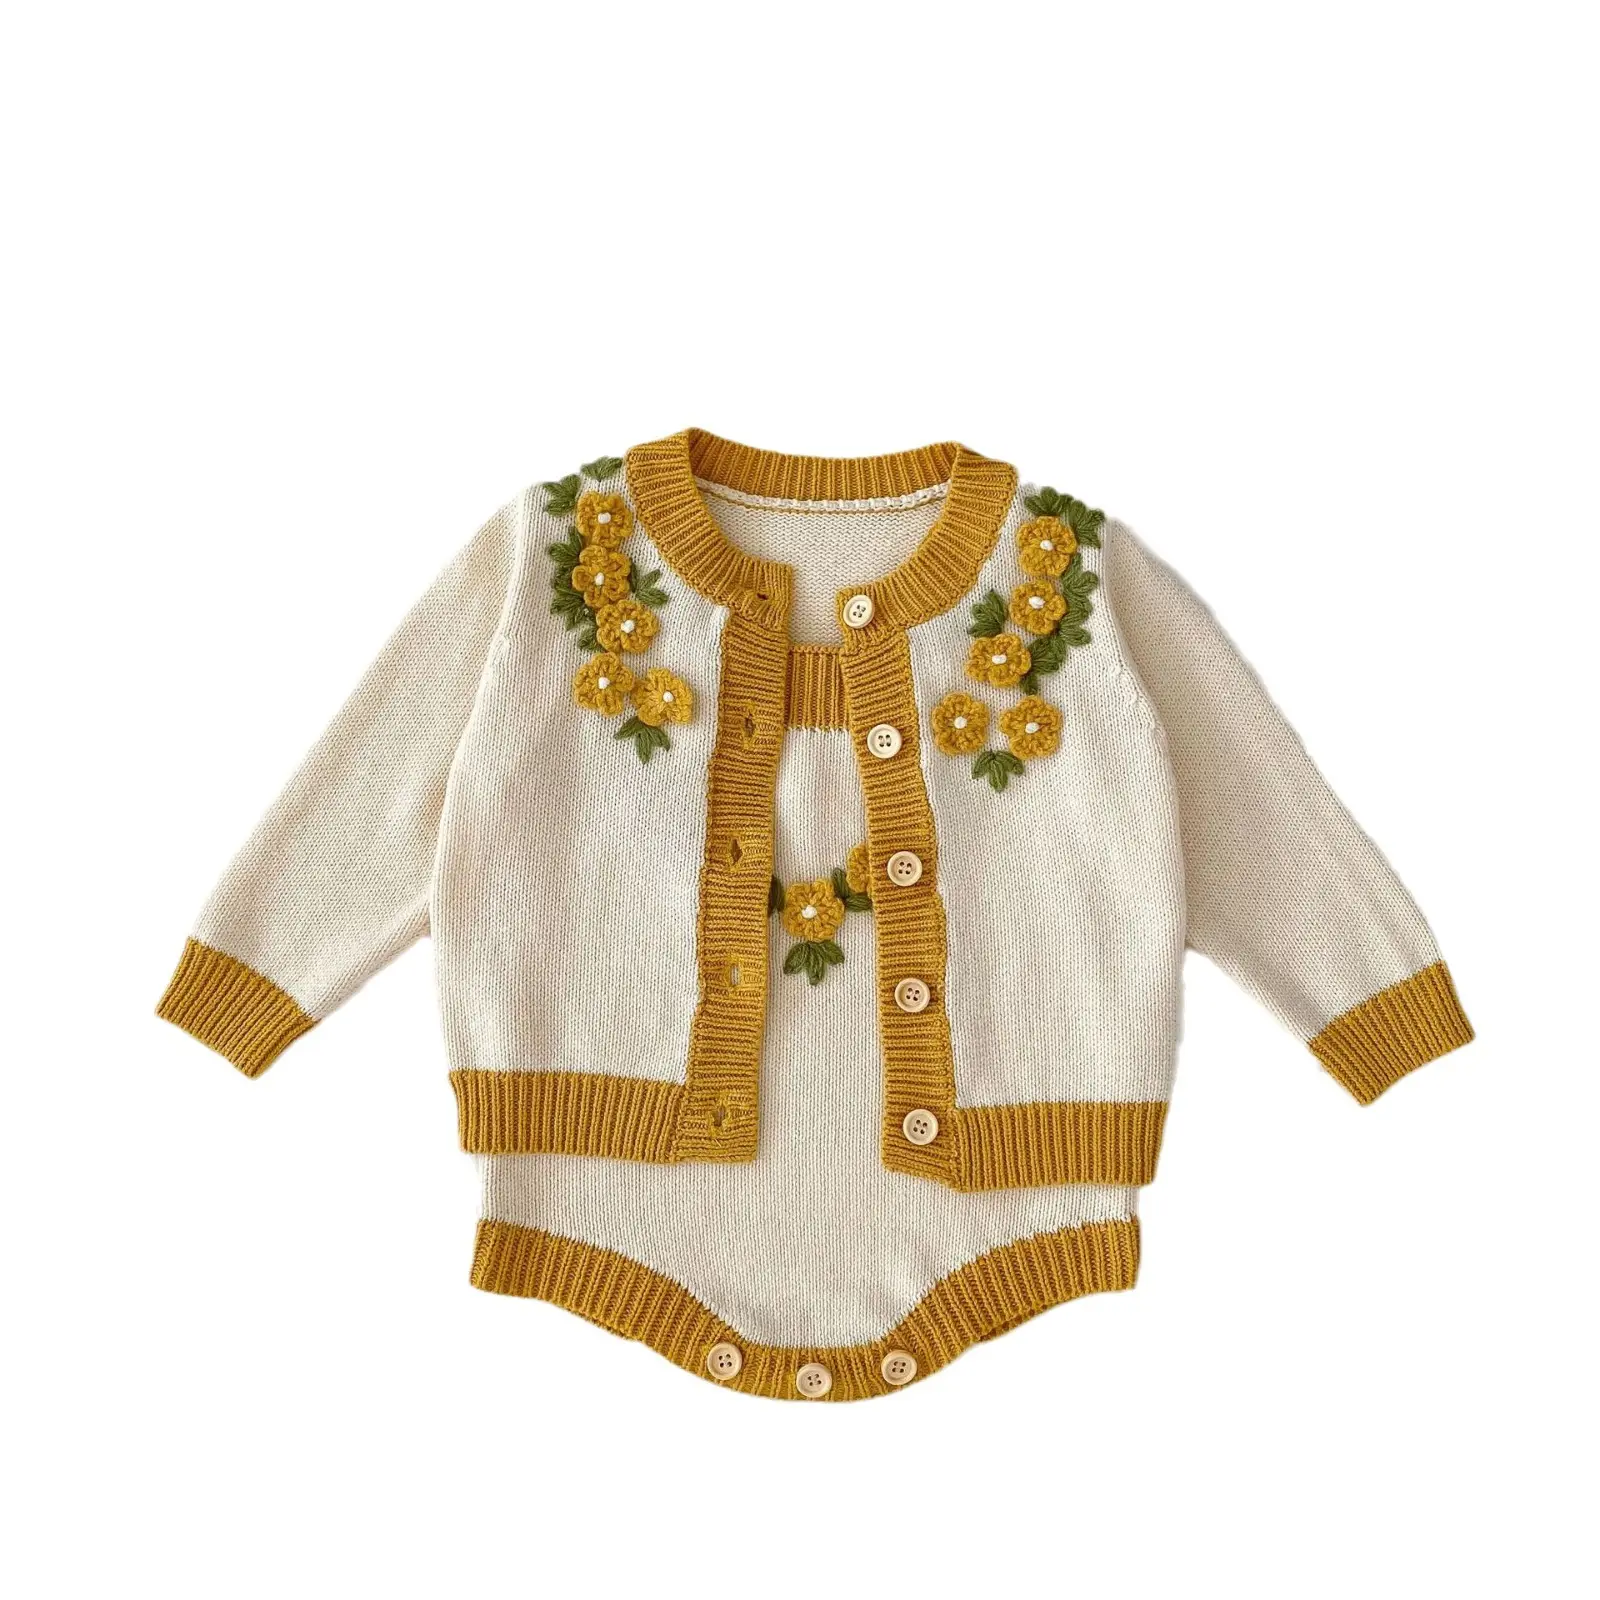 Cappotto tridimensionale lavorato a maglia per bambina + tutina a maglia con cinturino a fiori vestiti per bambina 0-3 mesi